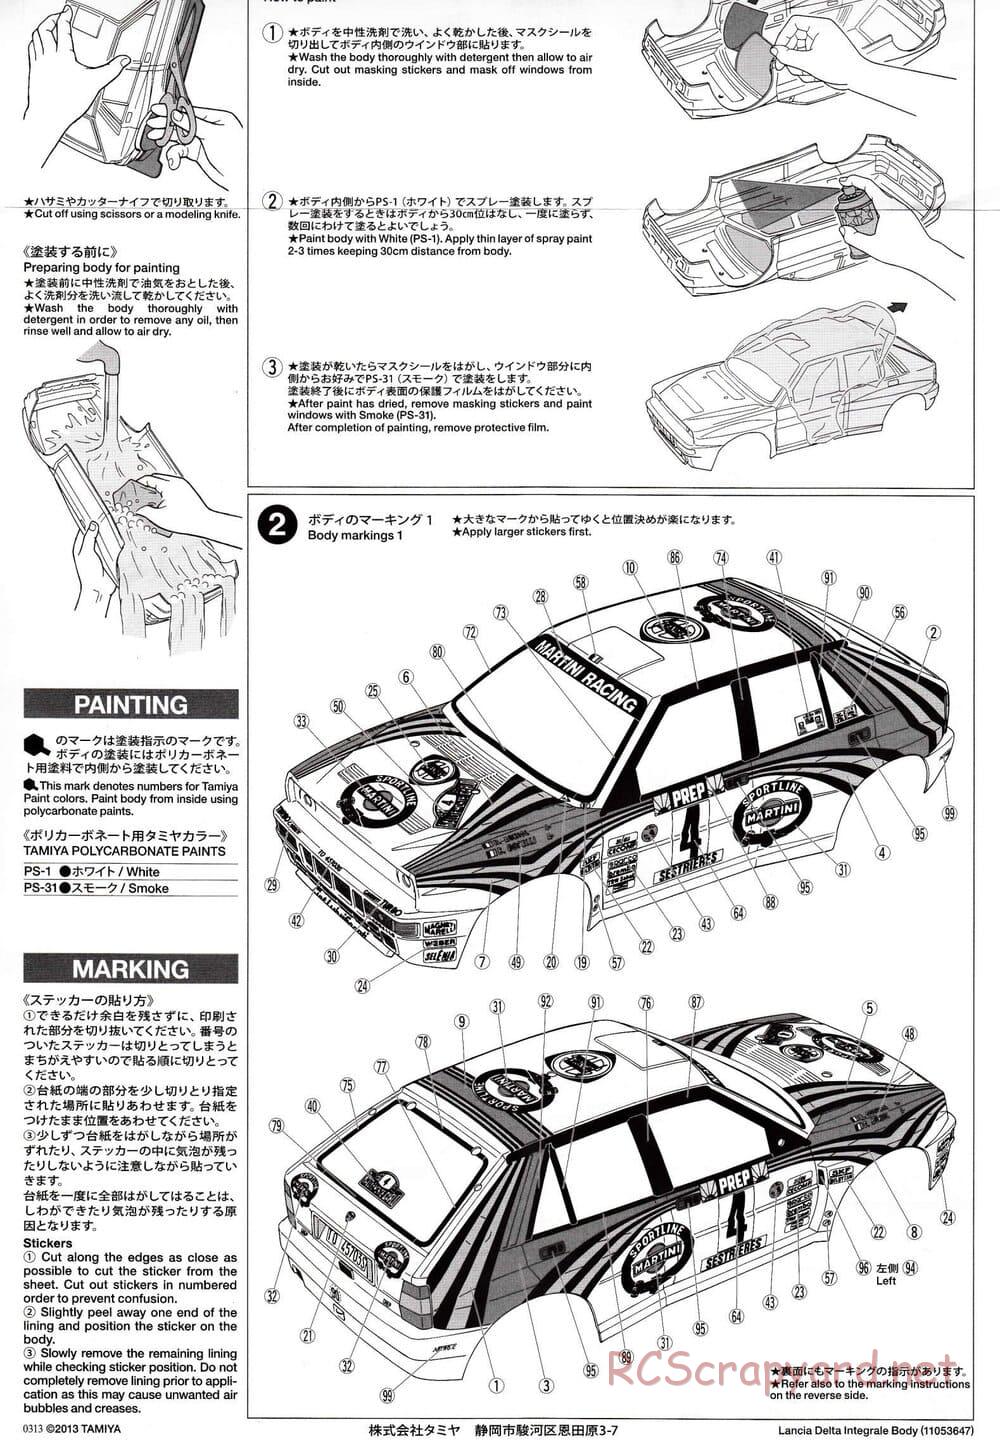 Tamiya - Lancia Delta Integrale - XV-01 Chassis - Body Manual - Page 2